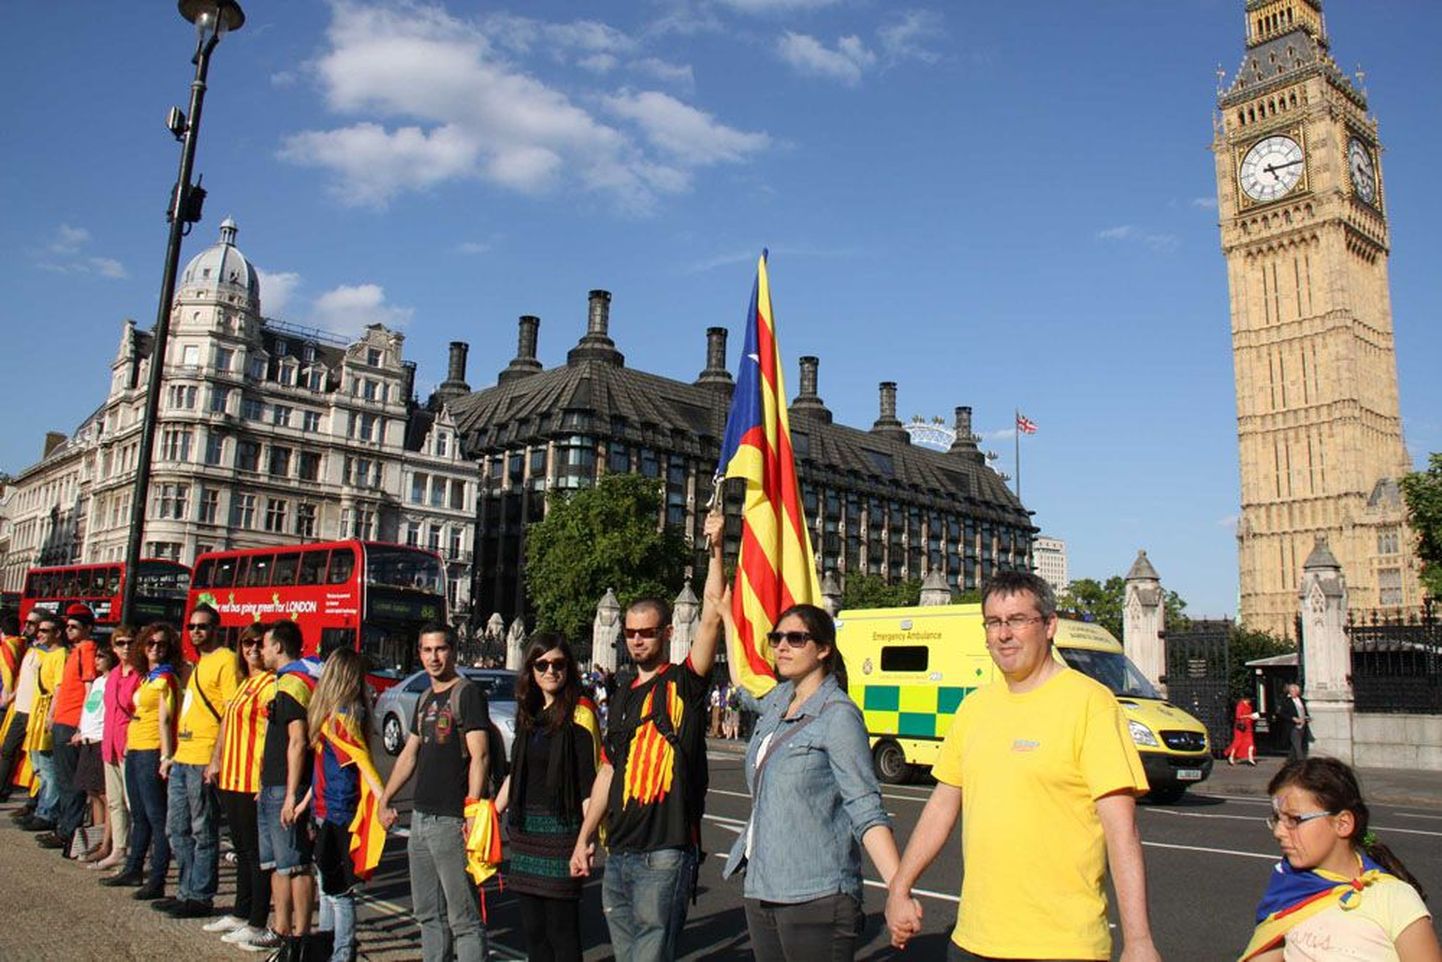 Homme korraldatava 400 kilomeetrit pika katalaanide keti eel on toimunud üle maailma samalaadseid väiksemaid meeleavaldusi nende iseseisvuse toetuseks. Pildil on Londonis peetud üritus.